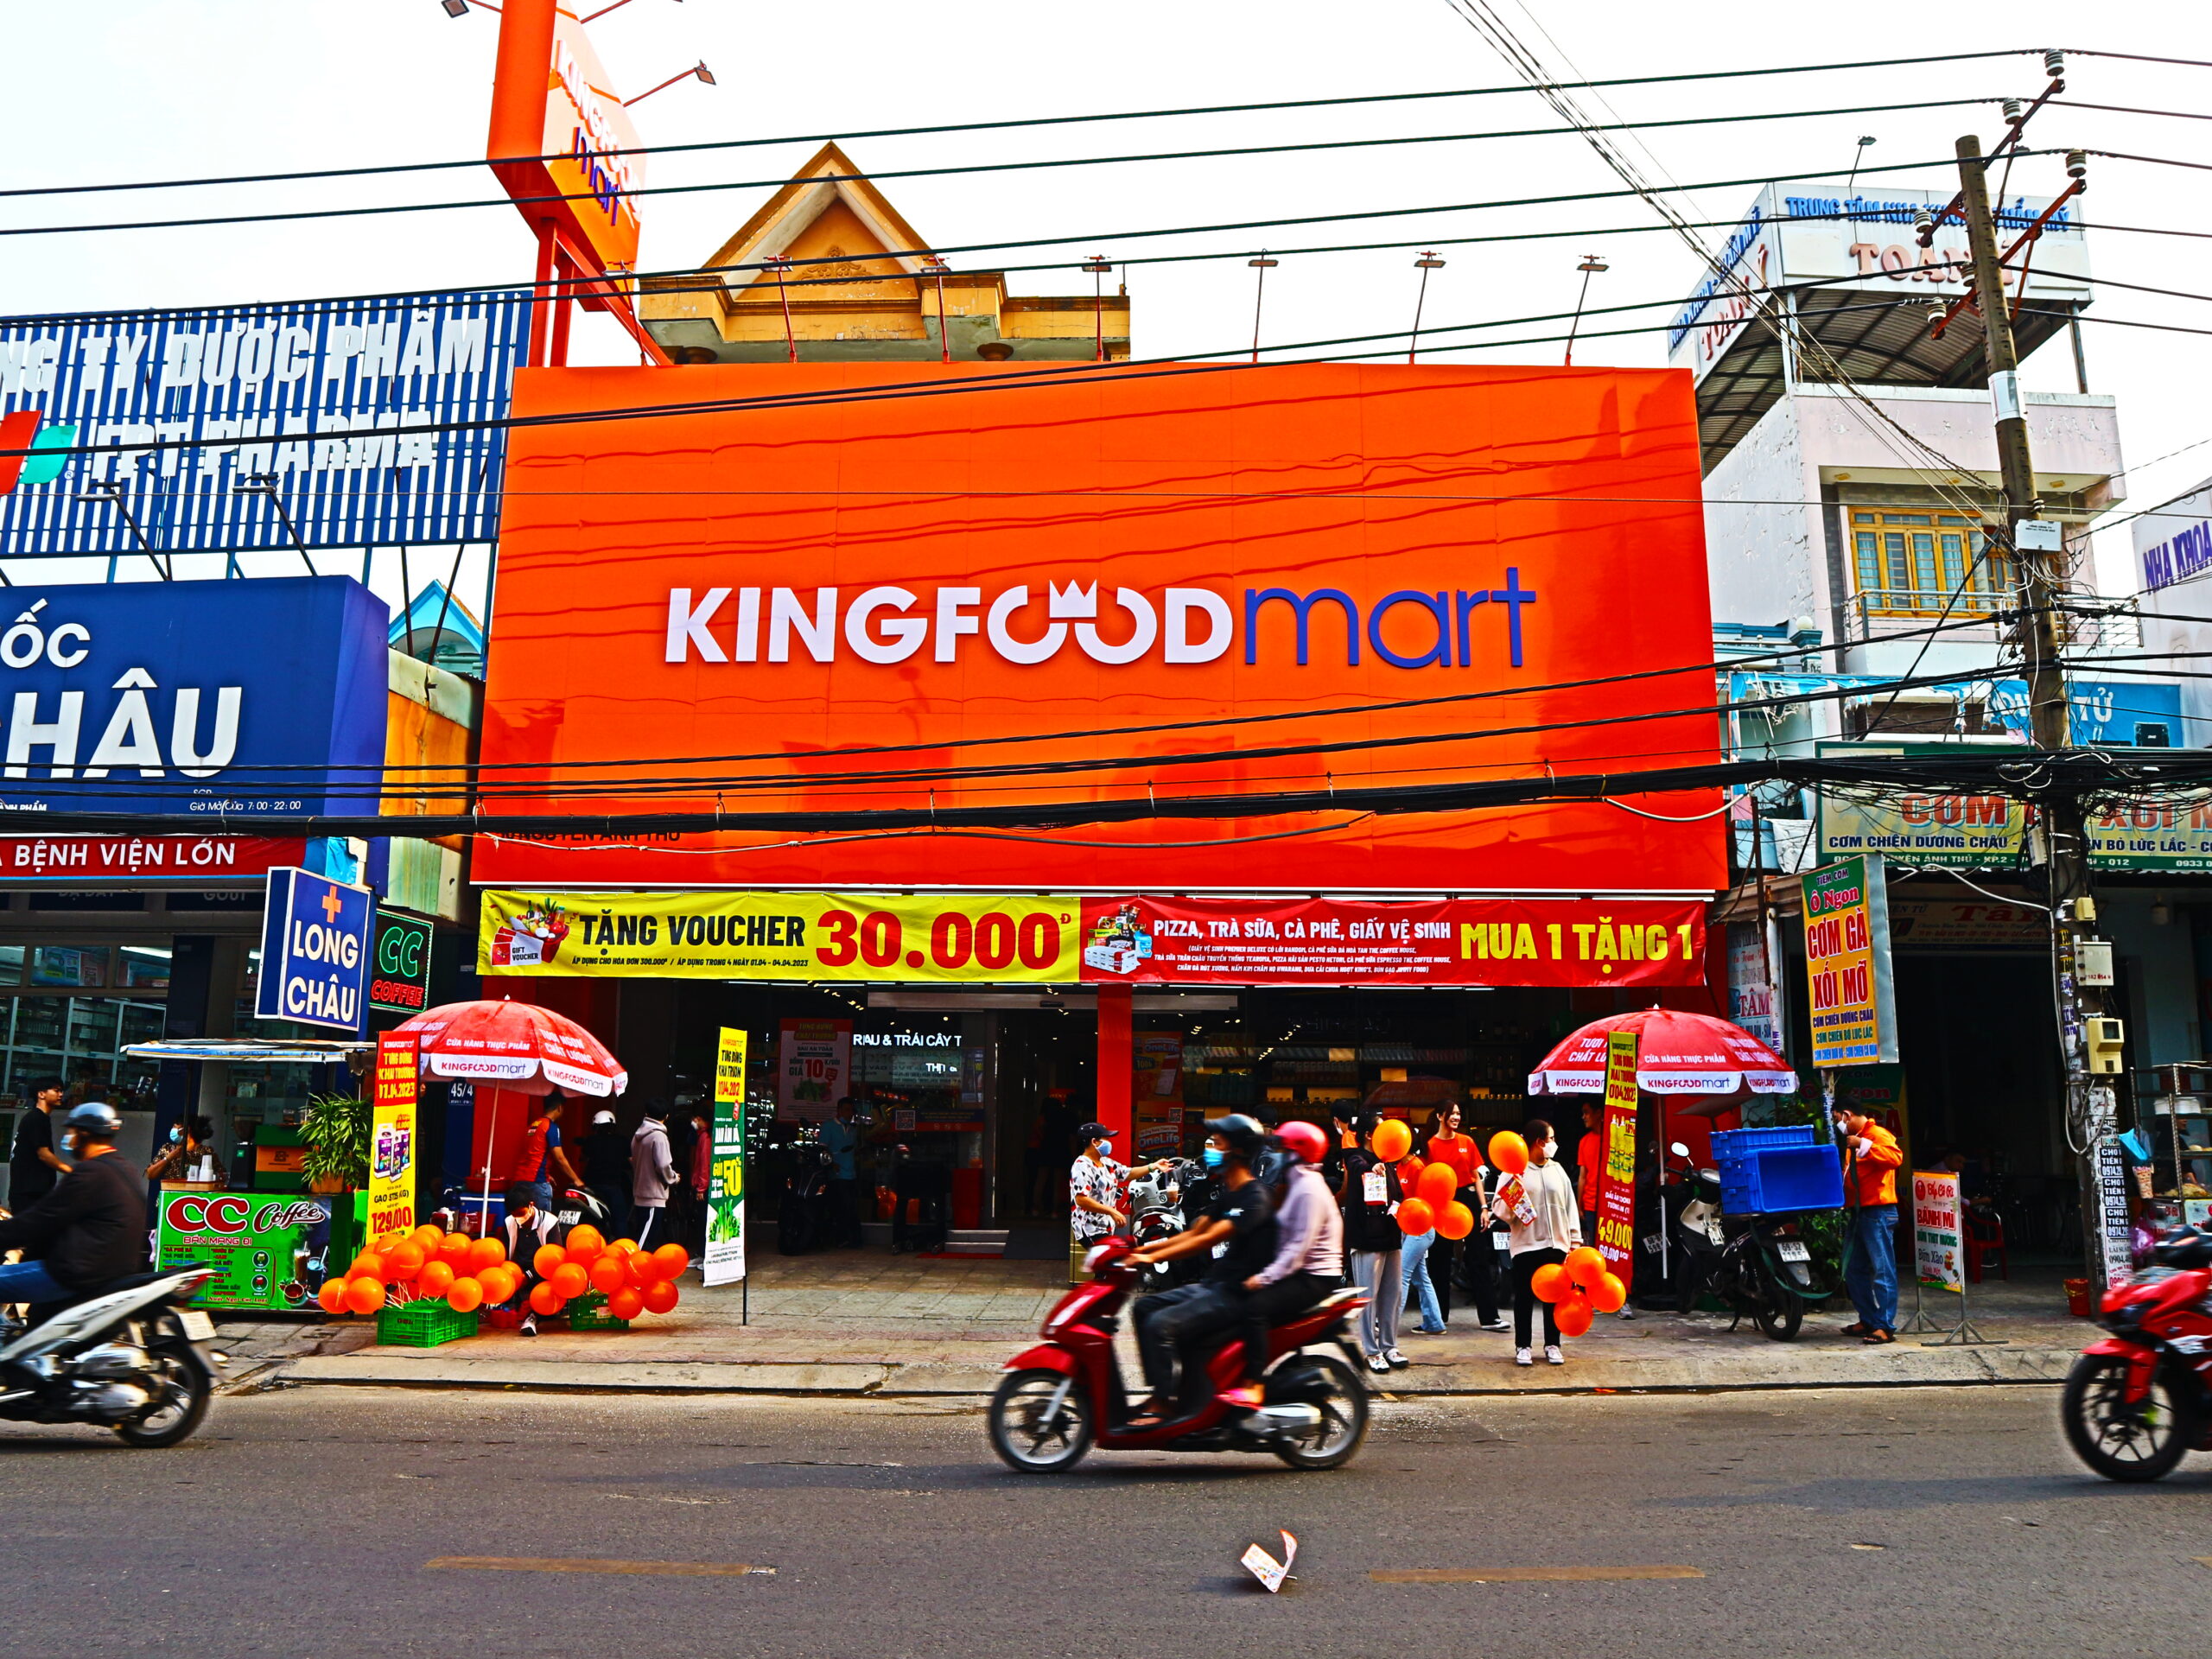 Khởi Động Tháng 4 Với Khai Trương Kingfoodmart Nguyễn Ảnh Thủ